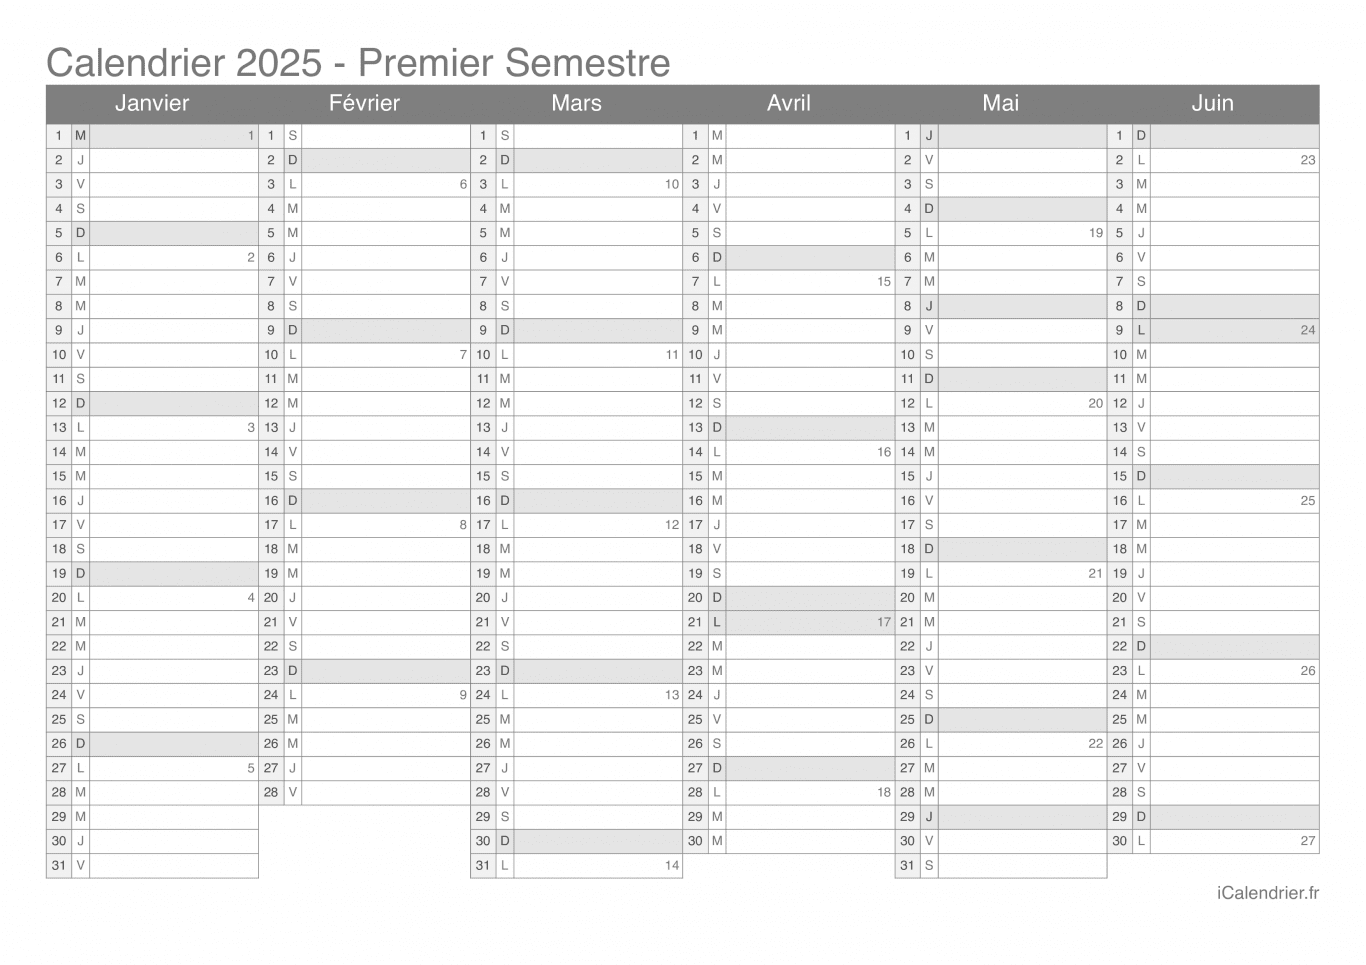 Calendrier par semestre avec numéros des semaines 2025